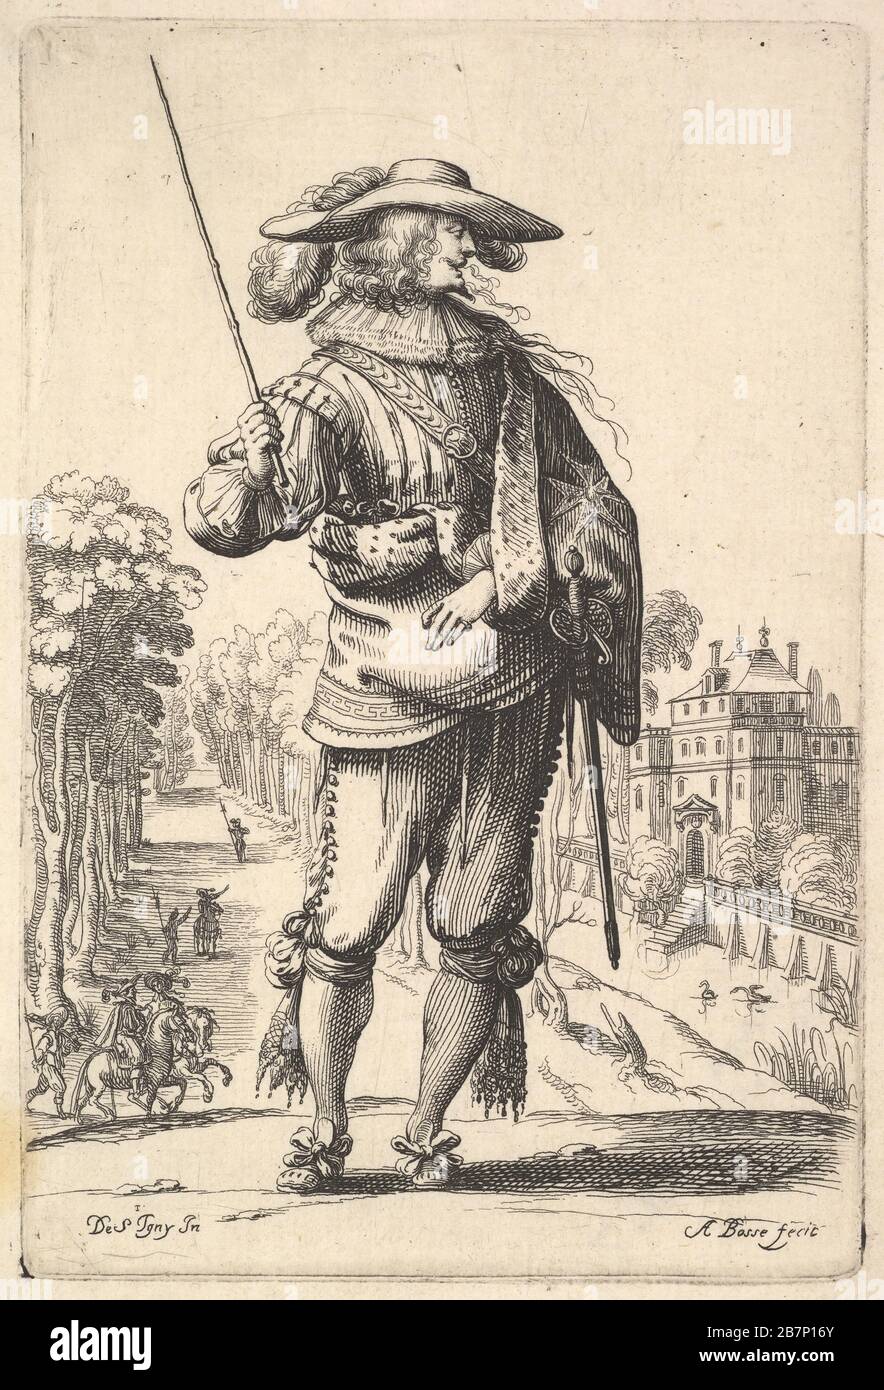 Un caballero con la cabeza girada hacia la derecha de perfil, con un  sombrero plomado y un manto con la cruz de la Orden del Espíritu Santo,  sosteniendo un látigo en su